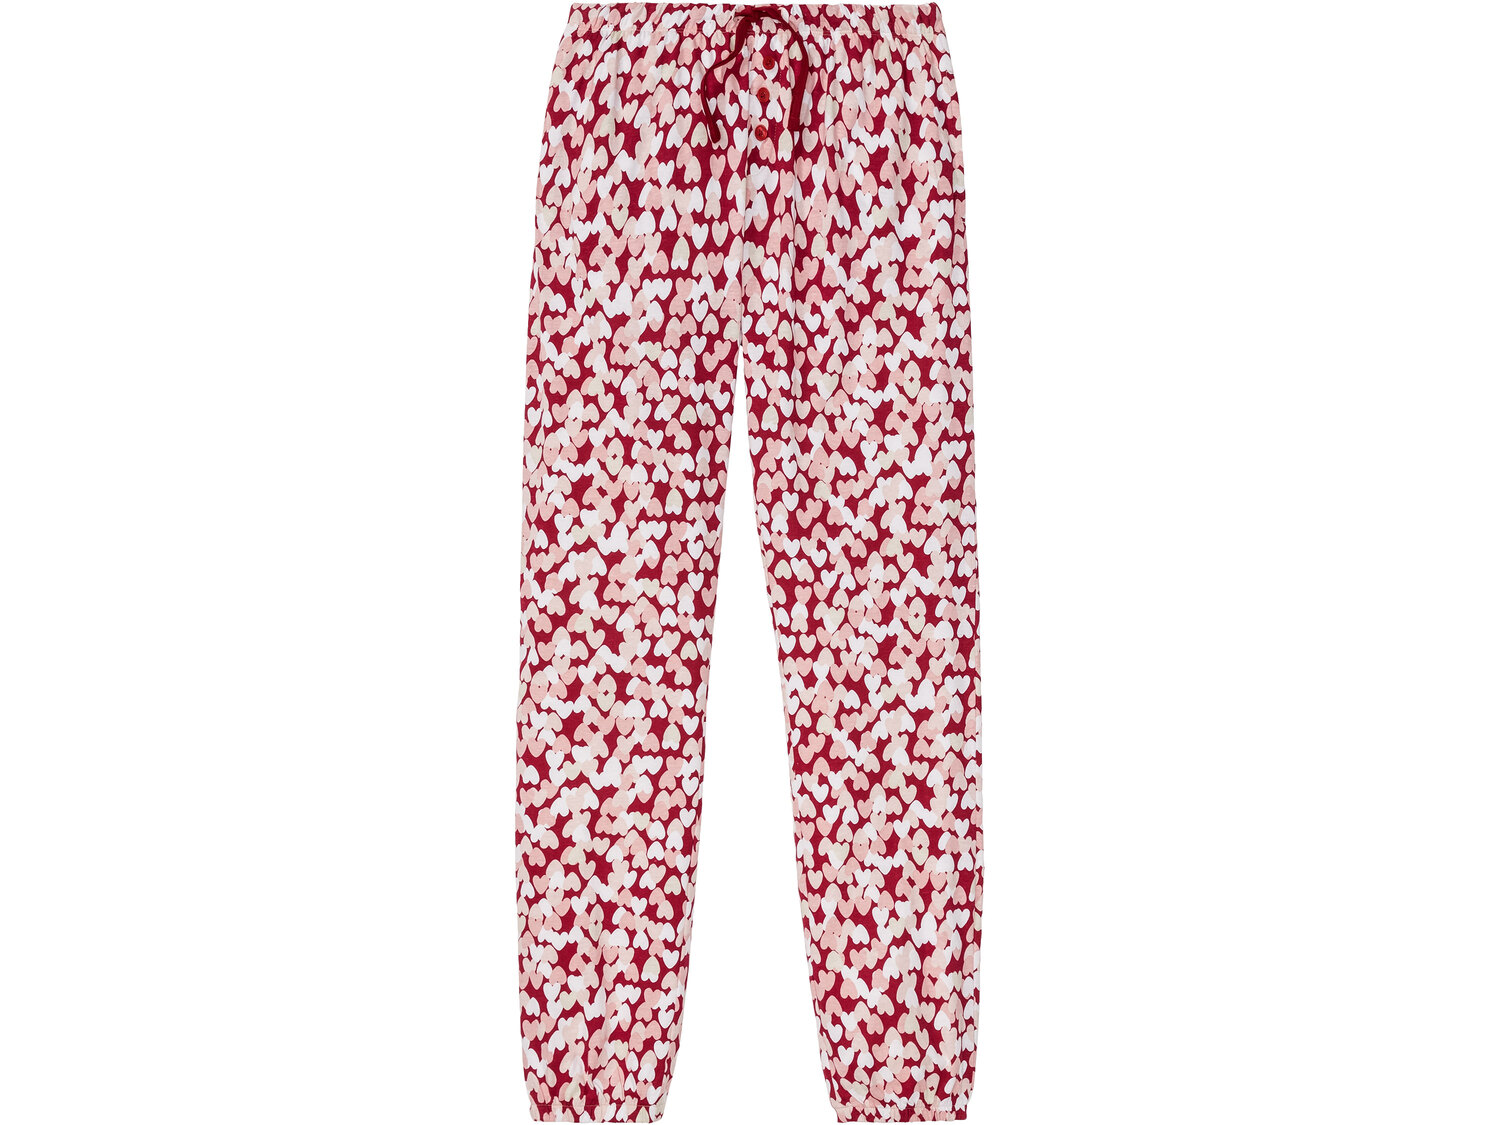 Piżama damska Esmara Lingerie, cena 39,99 PLN 
- rozmiary: S-L
- 100% bawełny
Dostępne ...